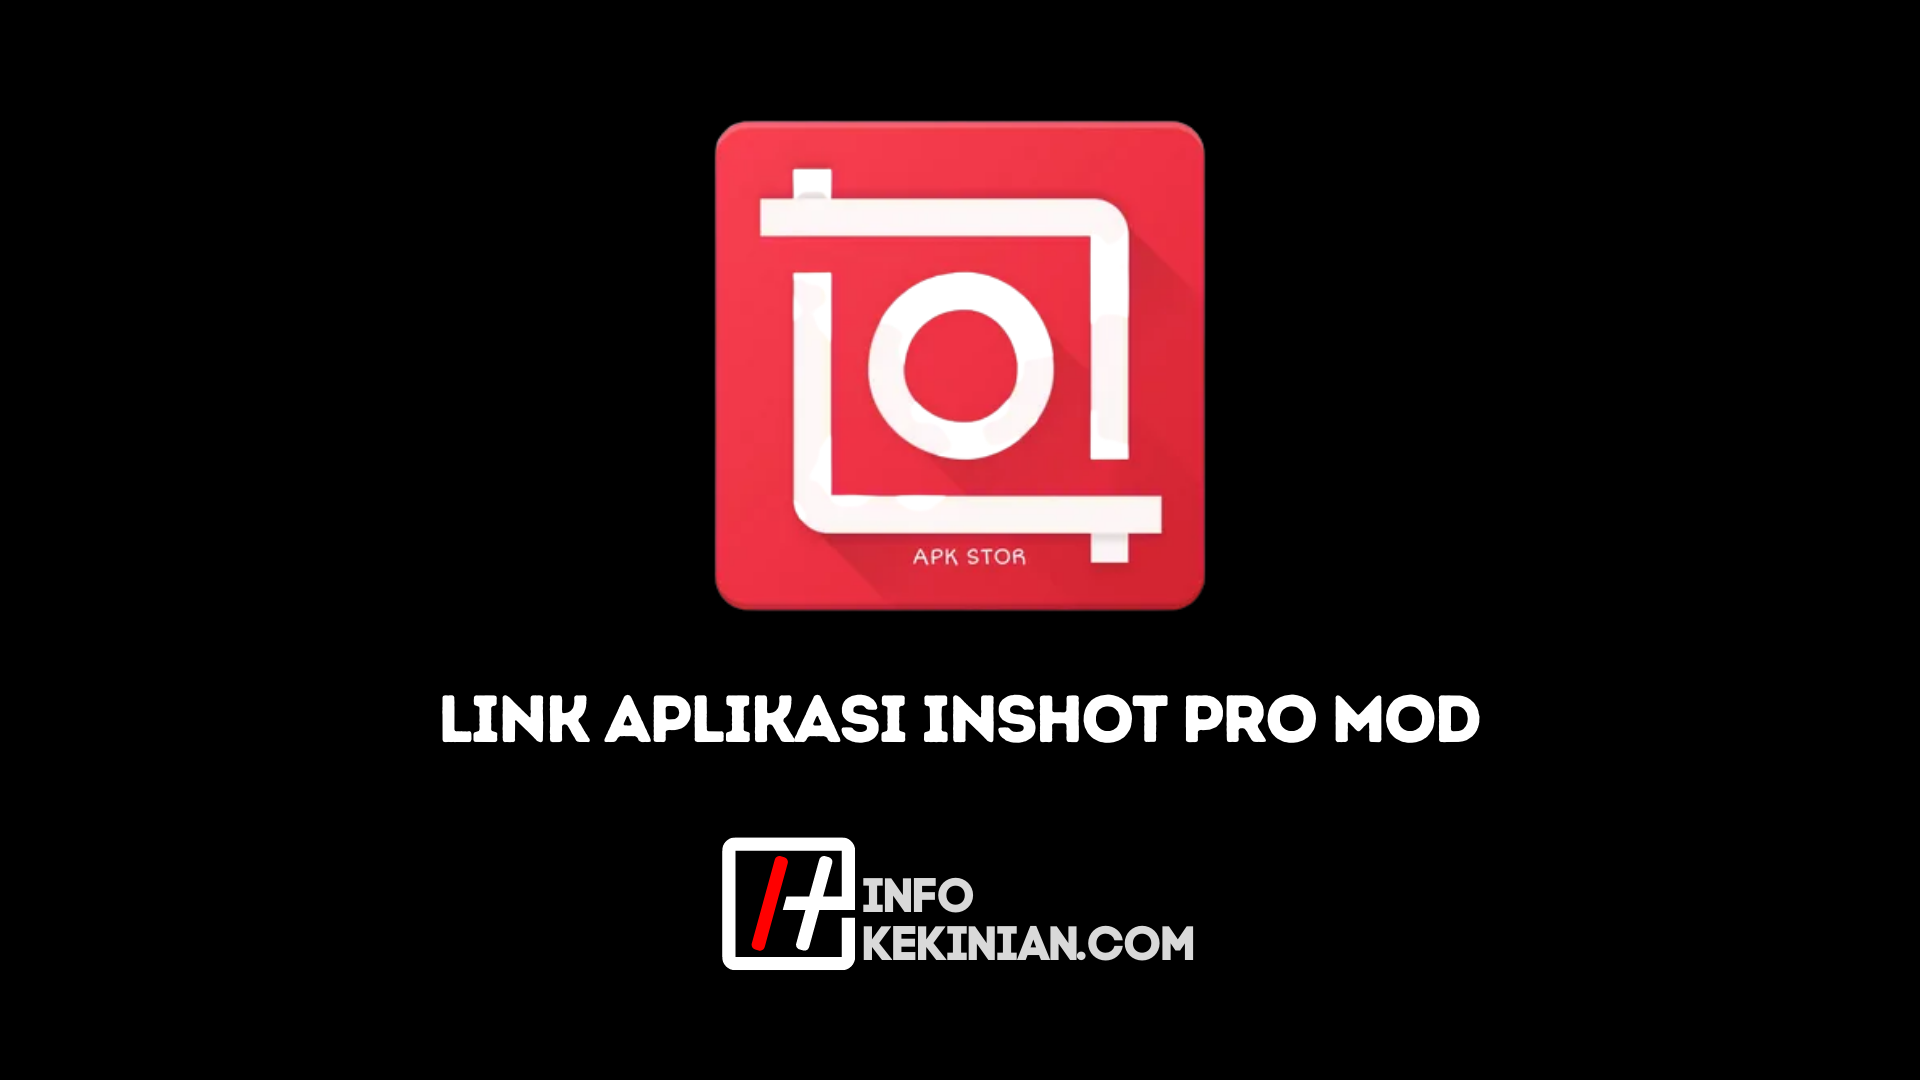 Qu'est-ce qu'Inshot Pro Mod APK_